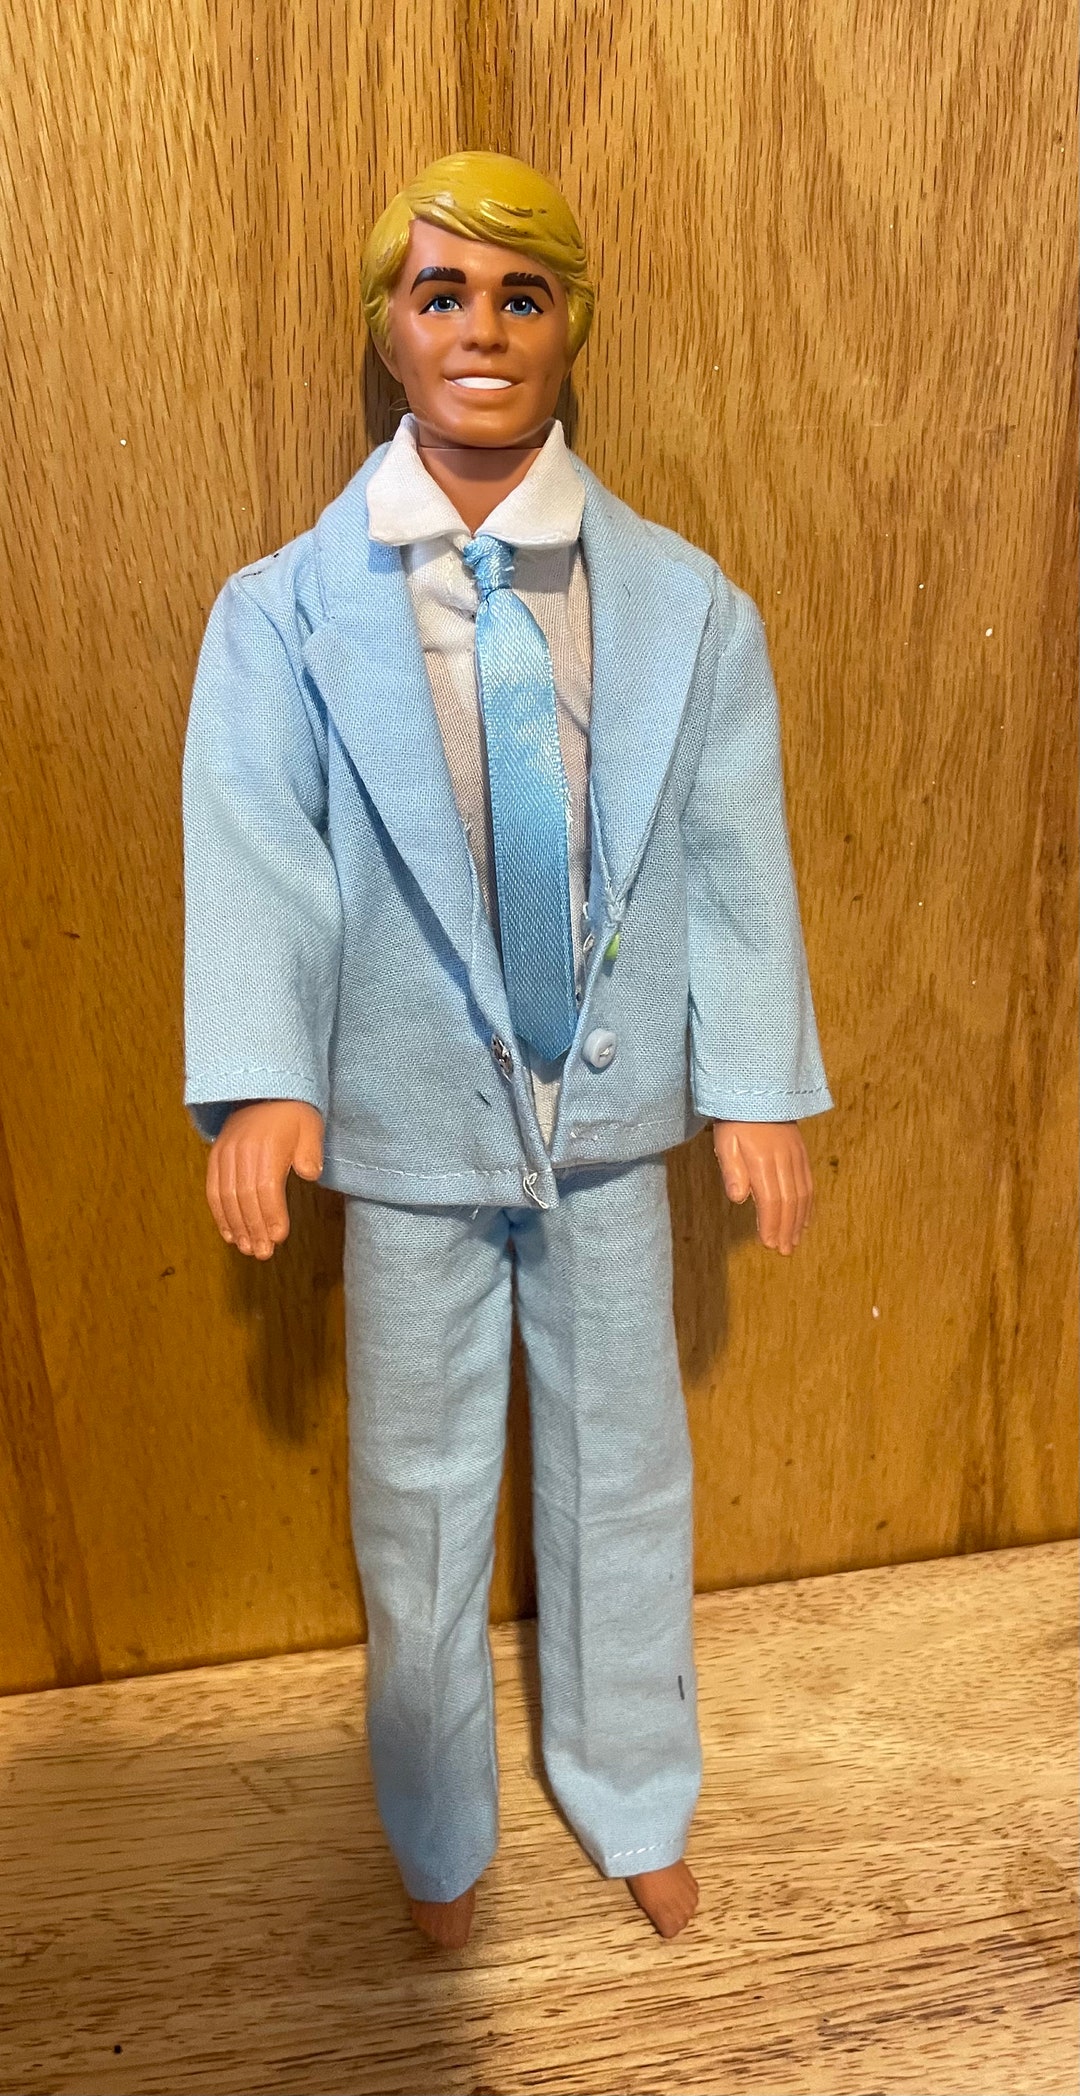 Ken Doll Suits-5 Colors - Etsy